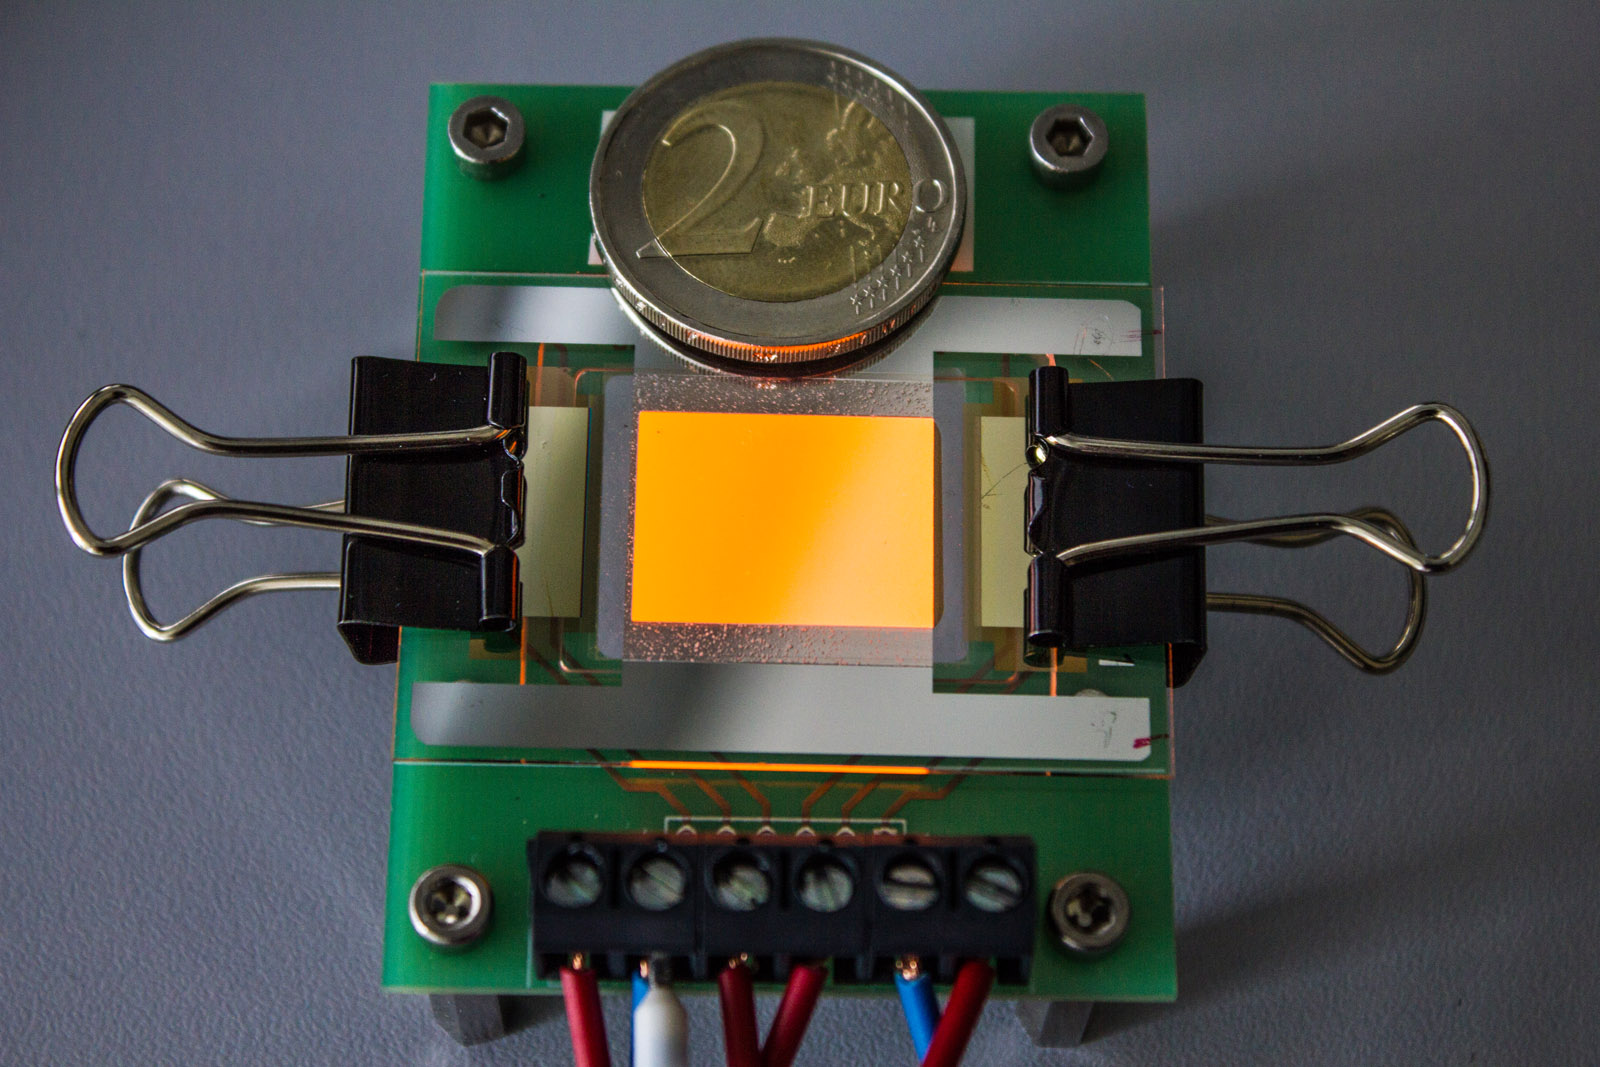 Orange leuchtende OLED auf einer Graphen-Elektrode. Die Zwei-Euro-Münze dient als Größenvergleich. 